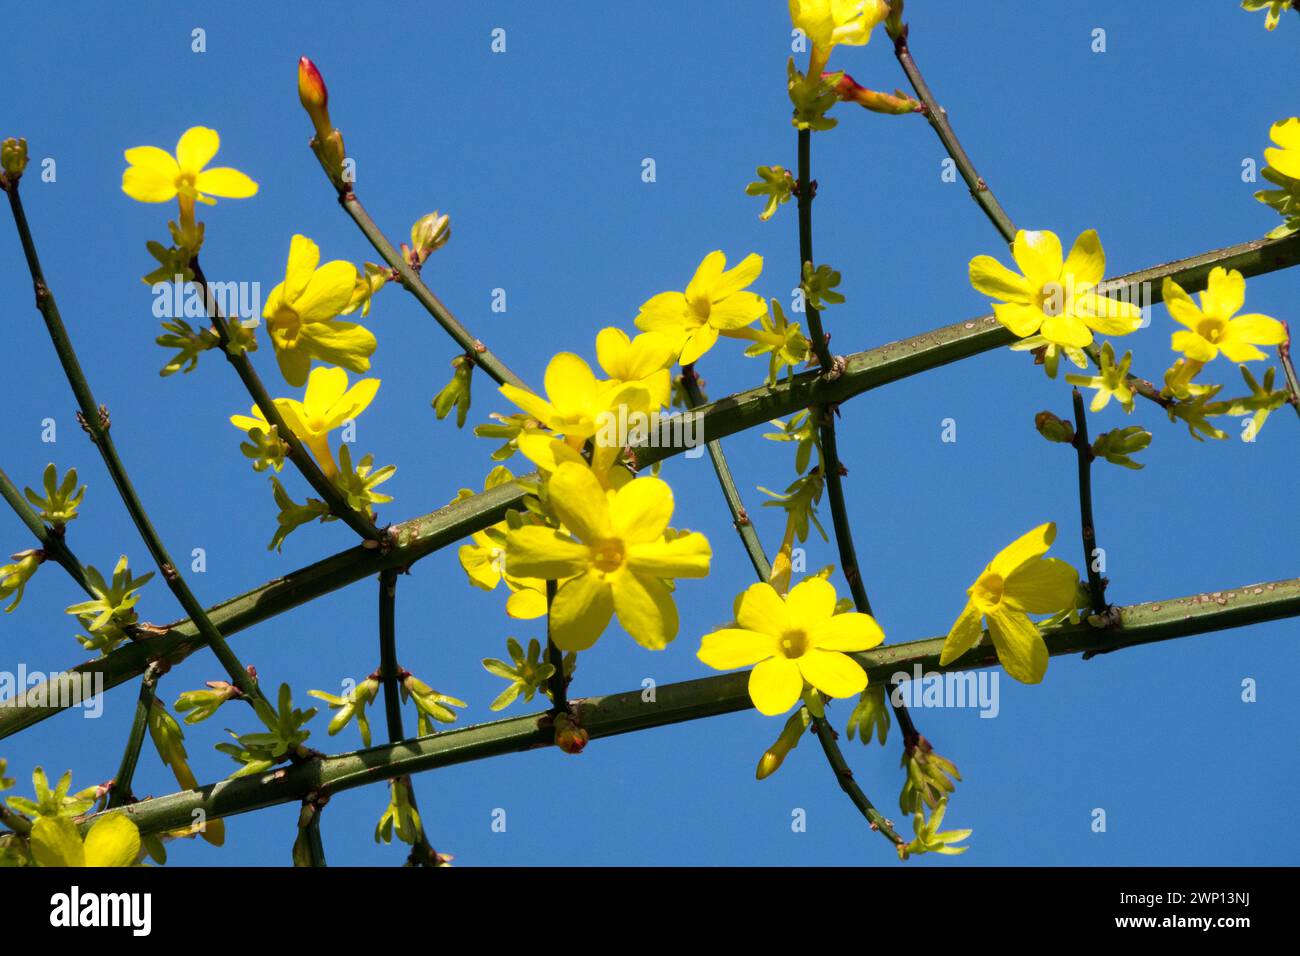 Jasminum nudiflorum floraison hivernale fleurs de jasmin sur branches fleur jaune floraison hivernale arbuste jasmin fleuri brindilles contre ciel bleu hiver Banque D'Images